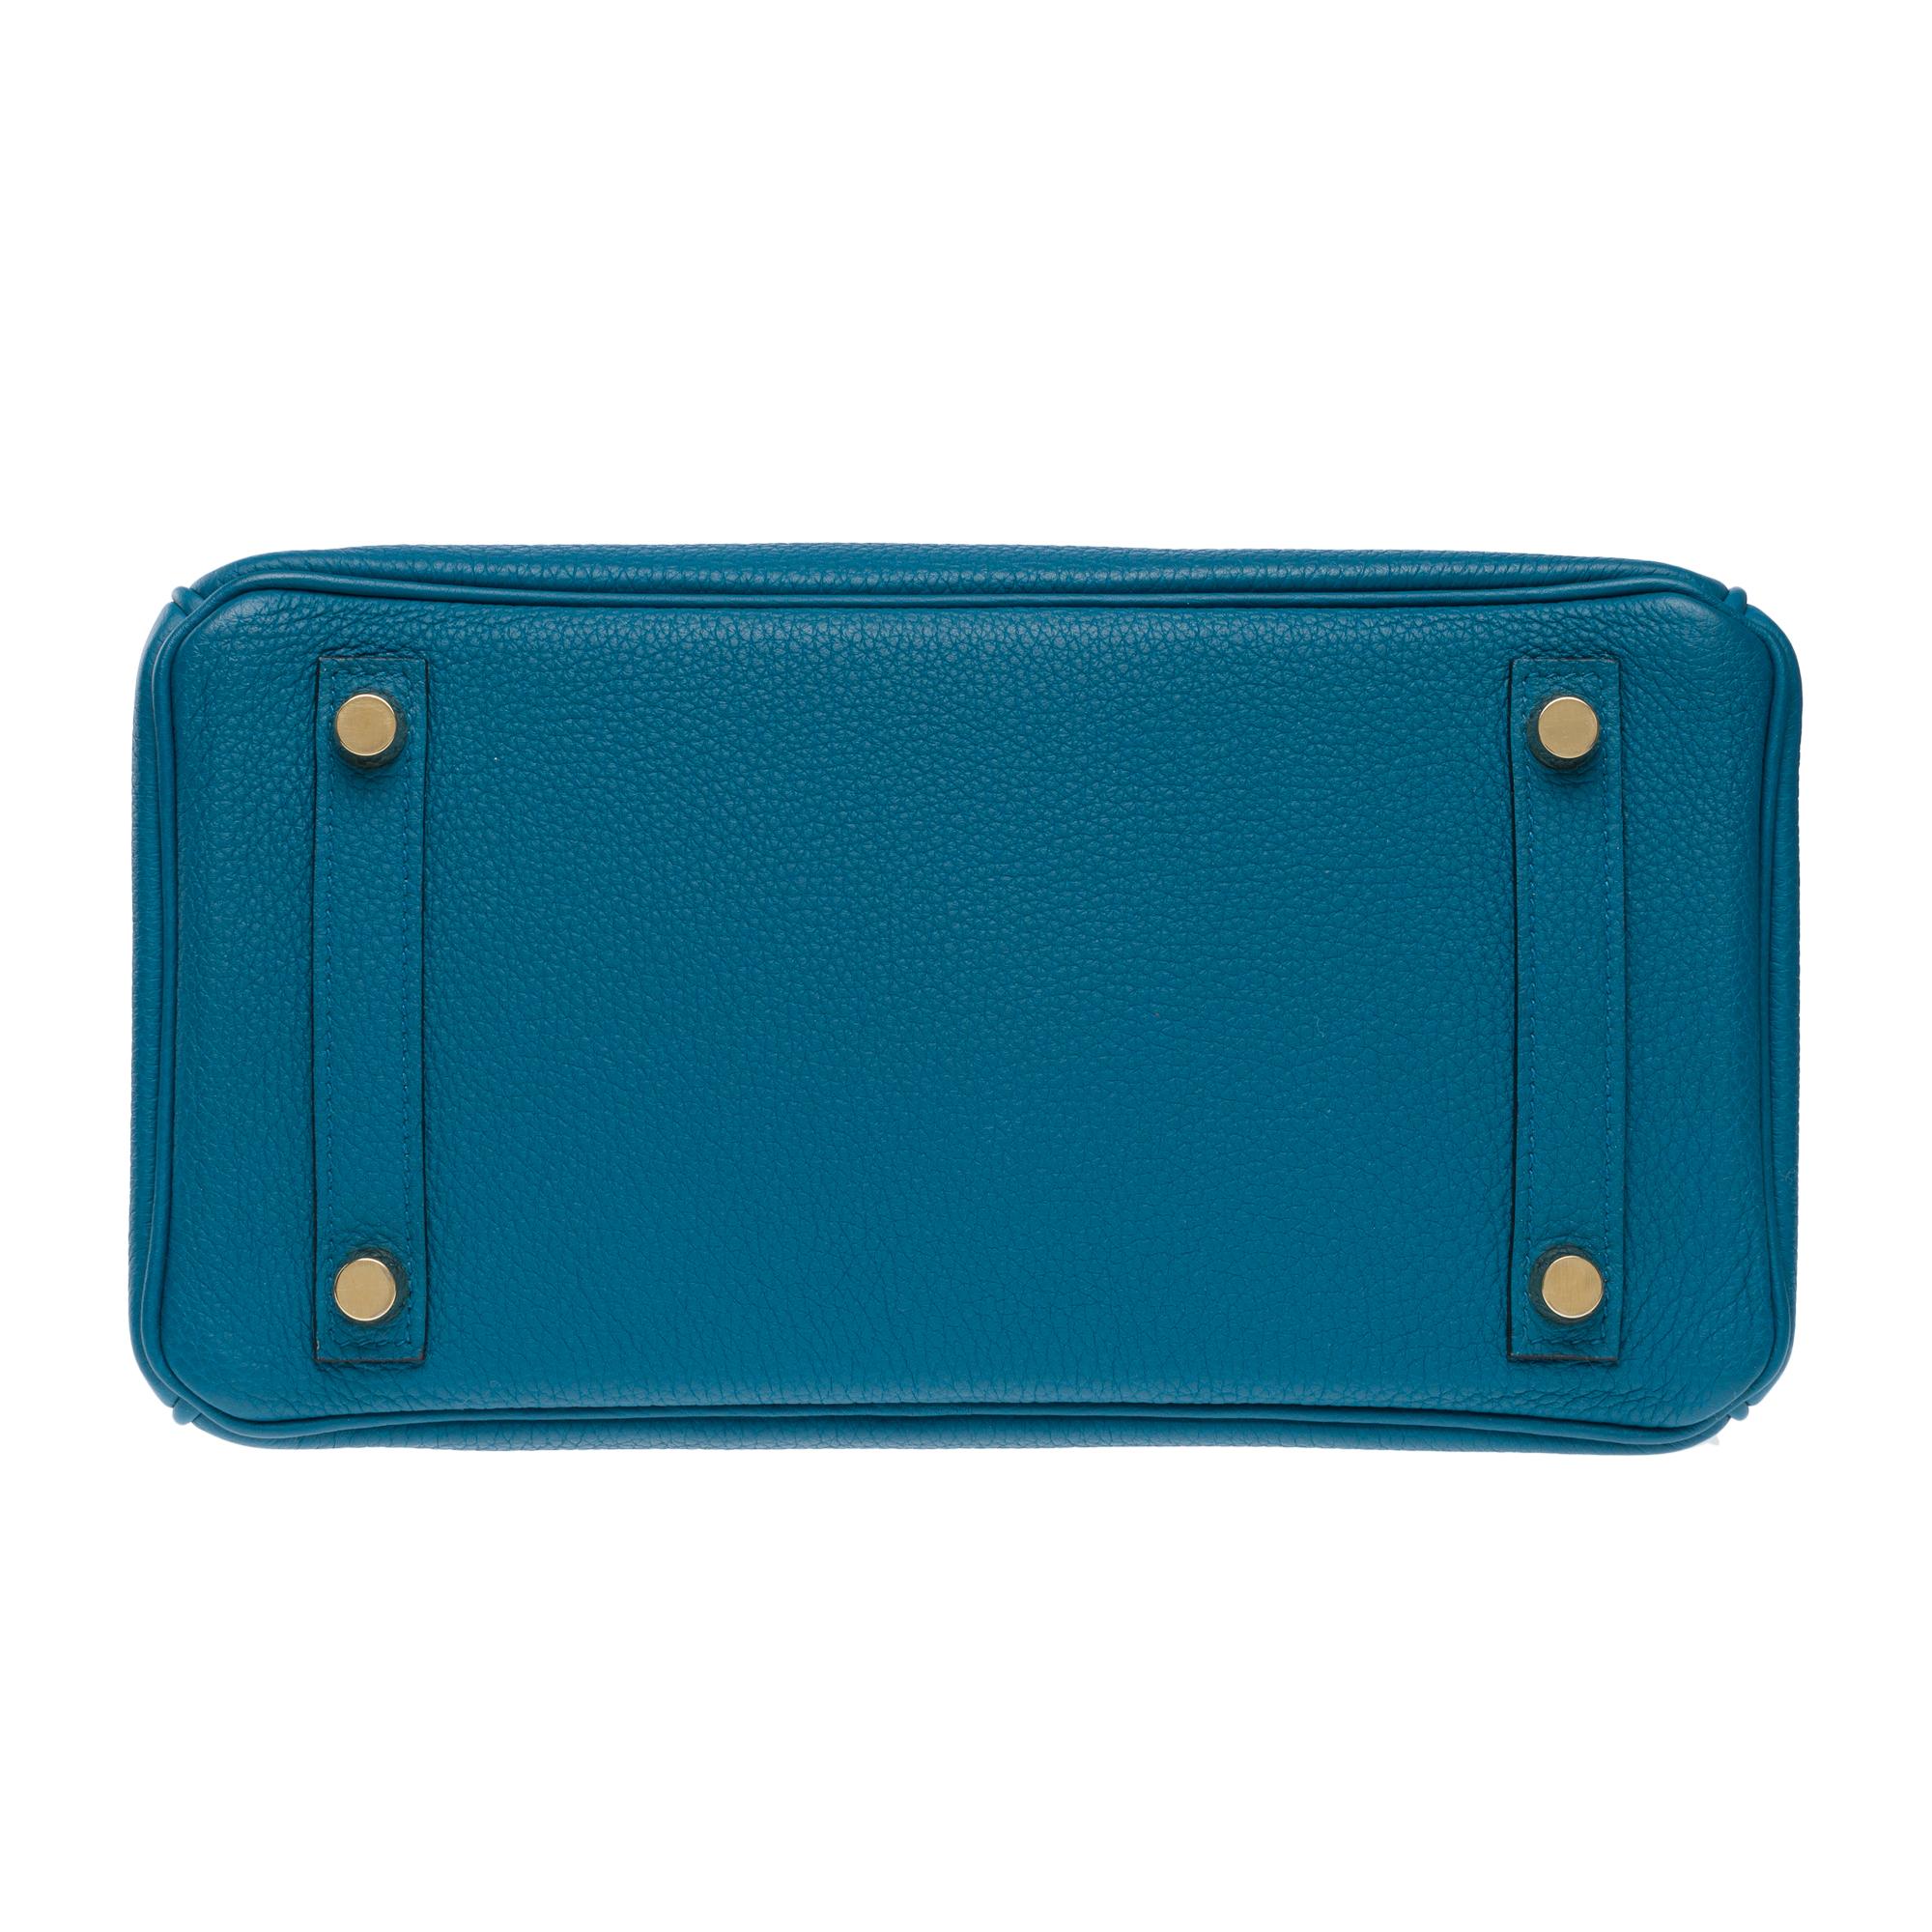 Amazing Hermes Birkin 25cm handbag in Togo Blue Cobalt leather, GHW For Sale 8